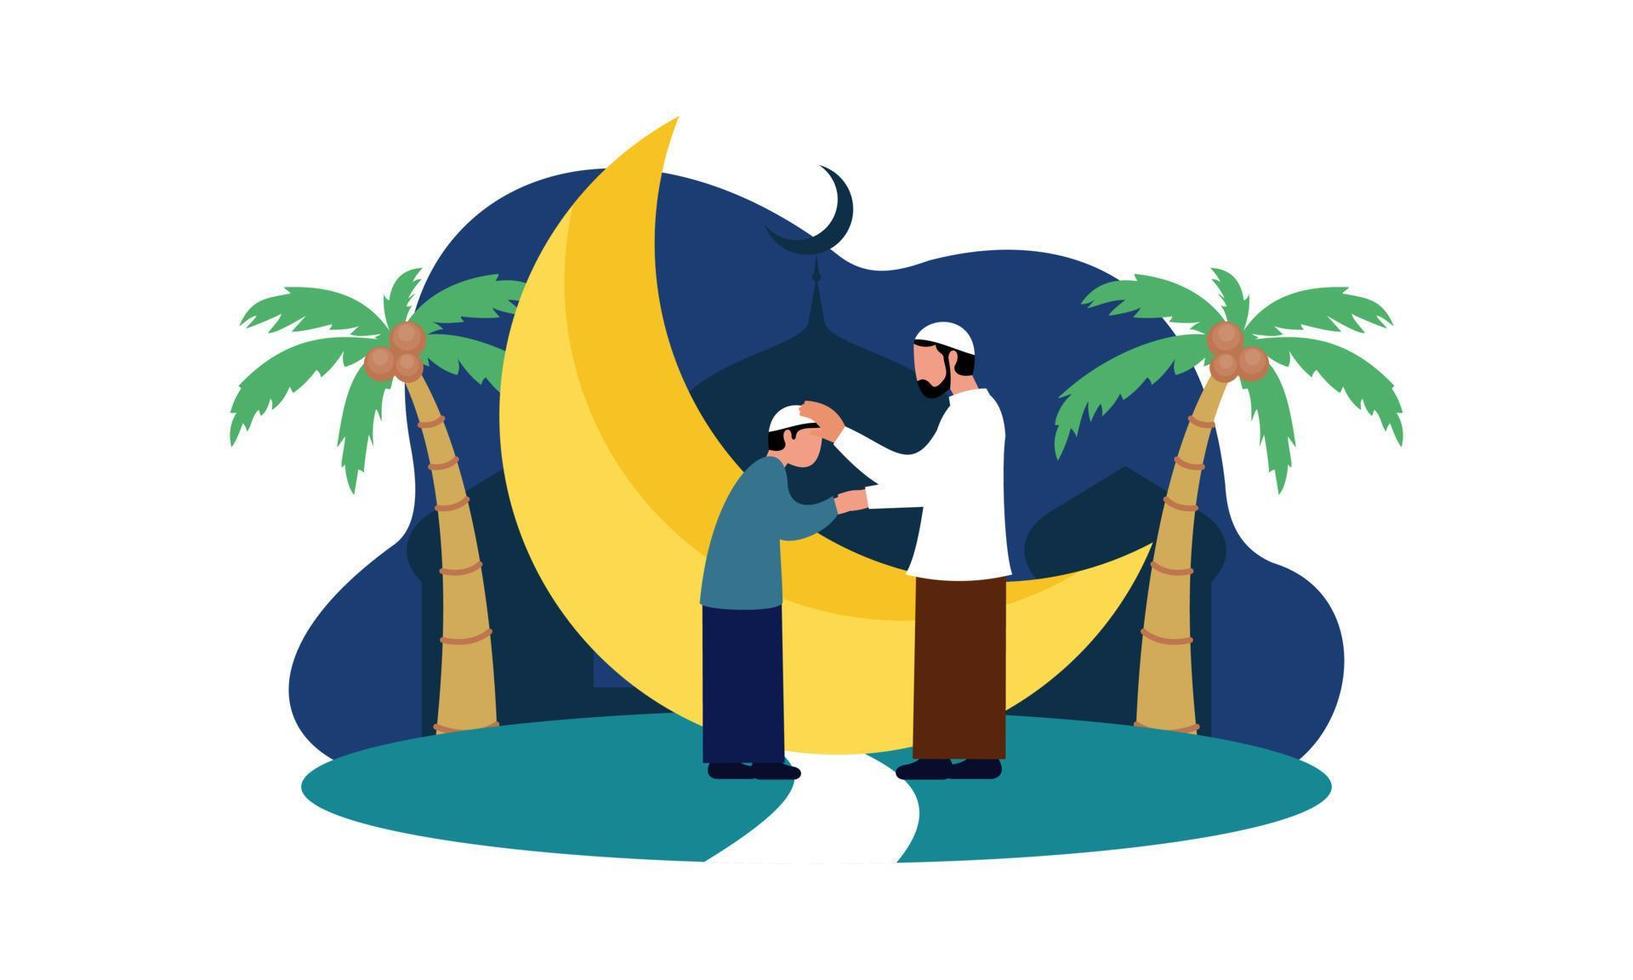 felice eid mubarak, concetto di saluto del ramadan mubarak con l'illustrazione del carattere della gente vettore